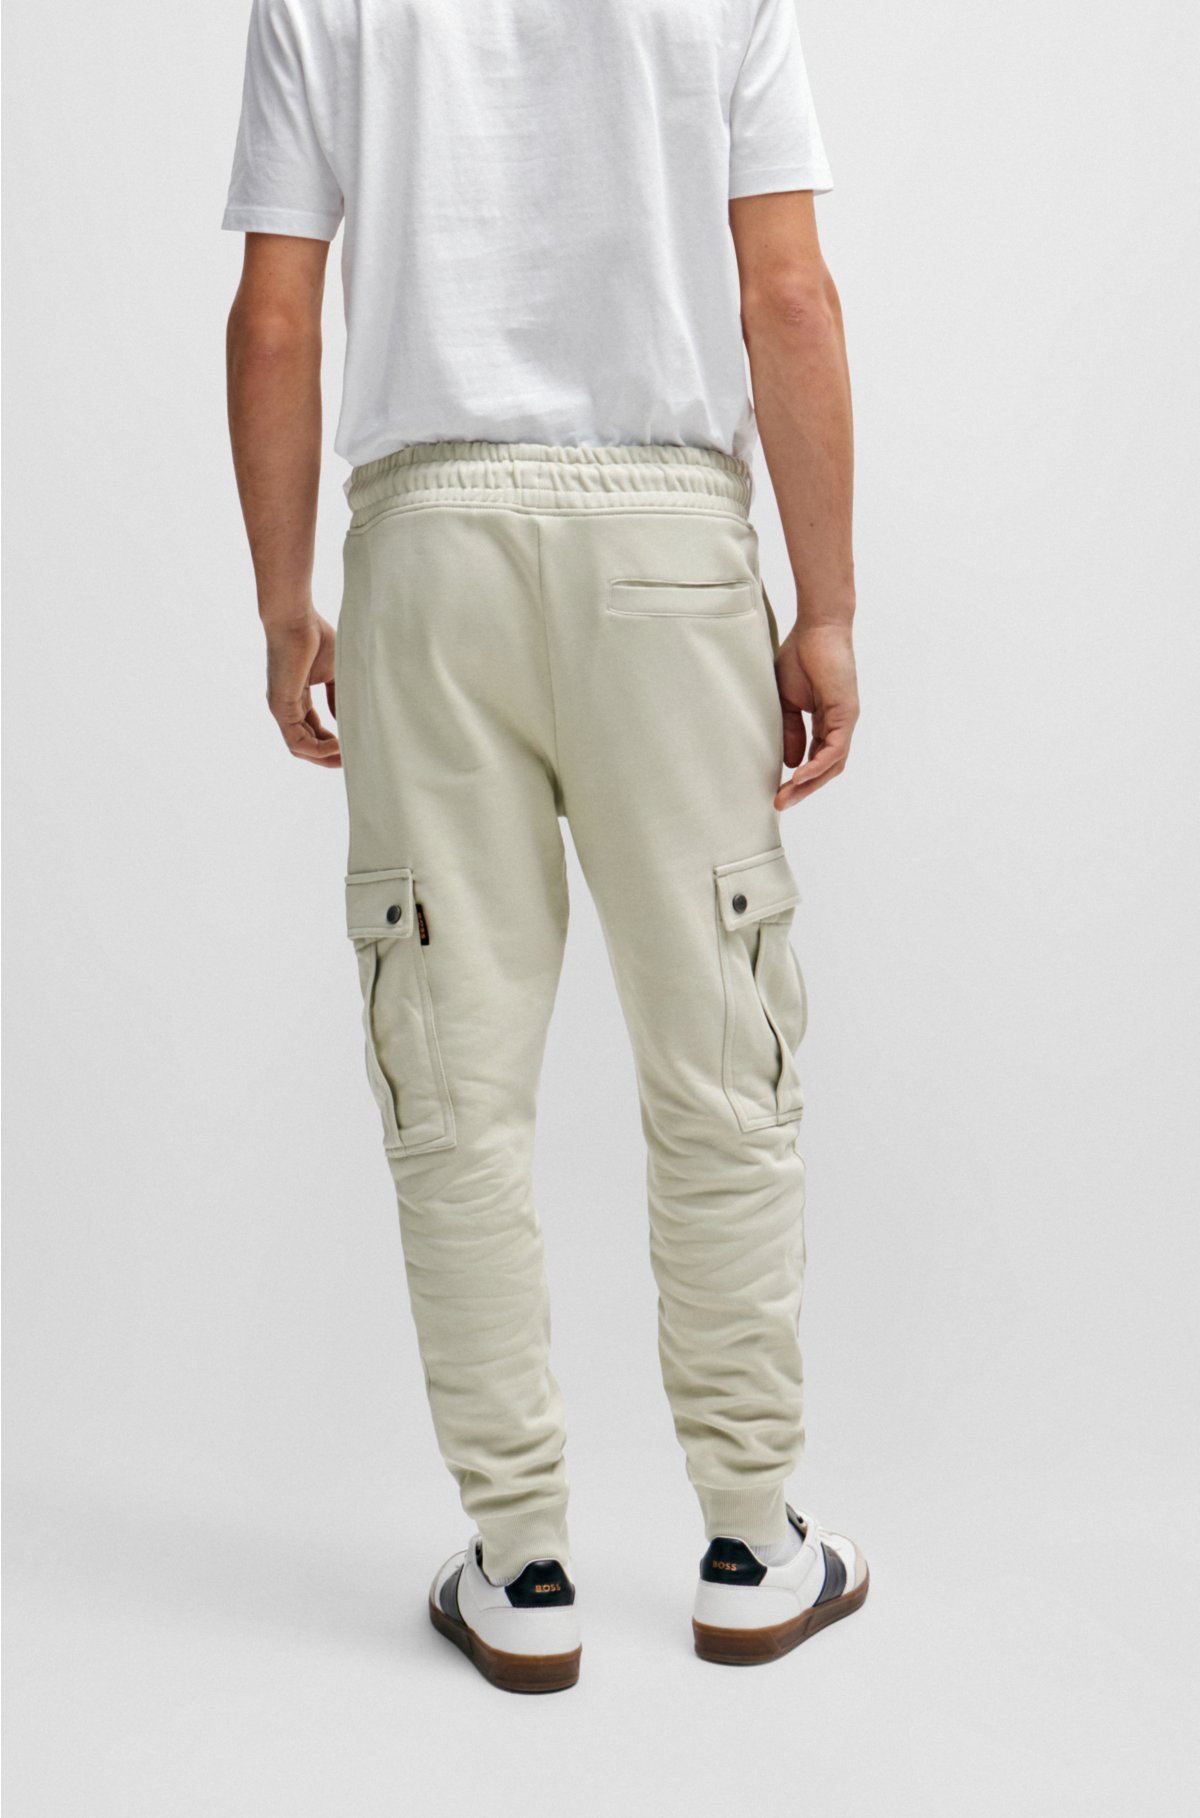 Pantalón de chandal tipo jogger 100% algodón